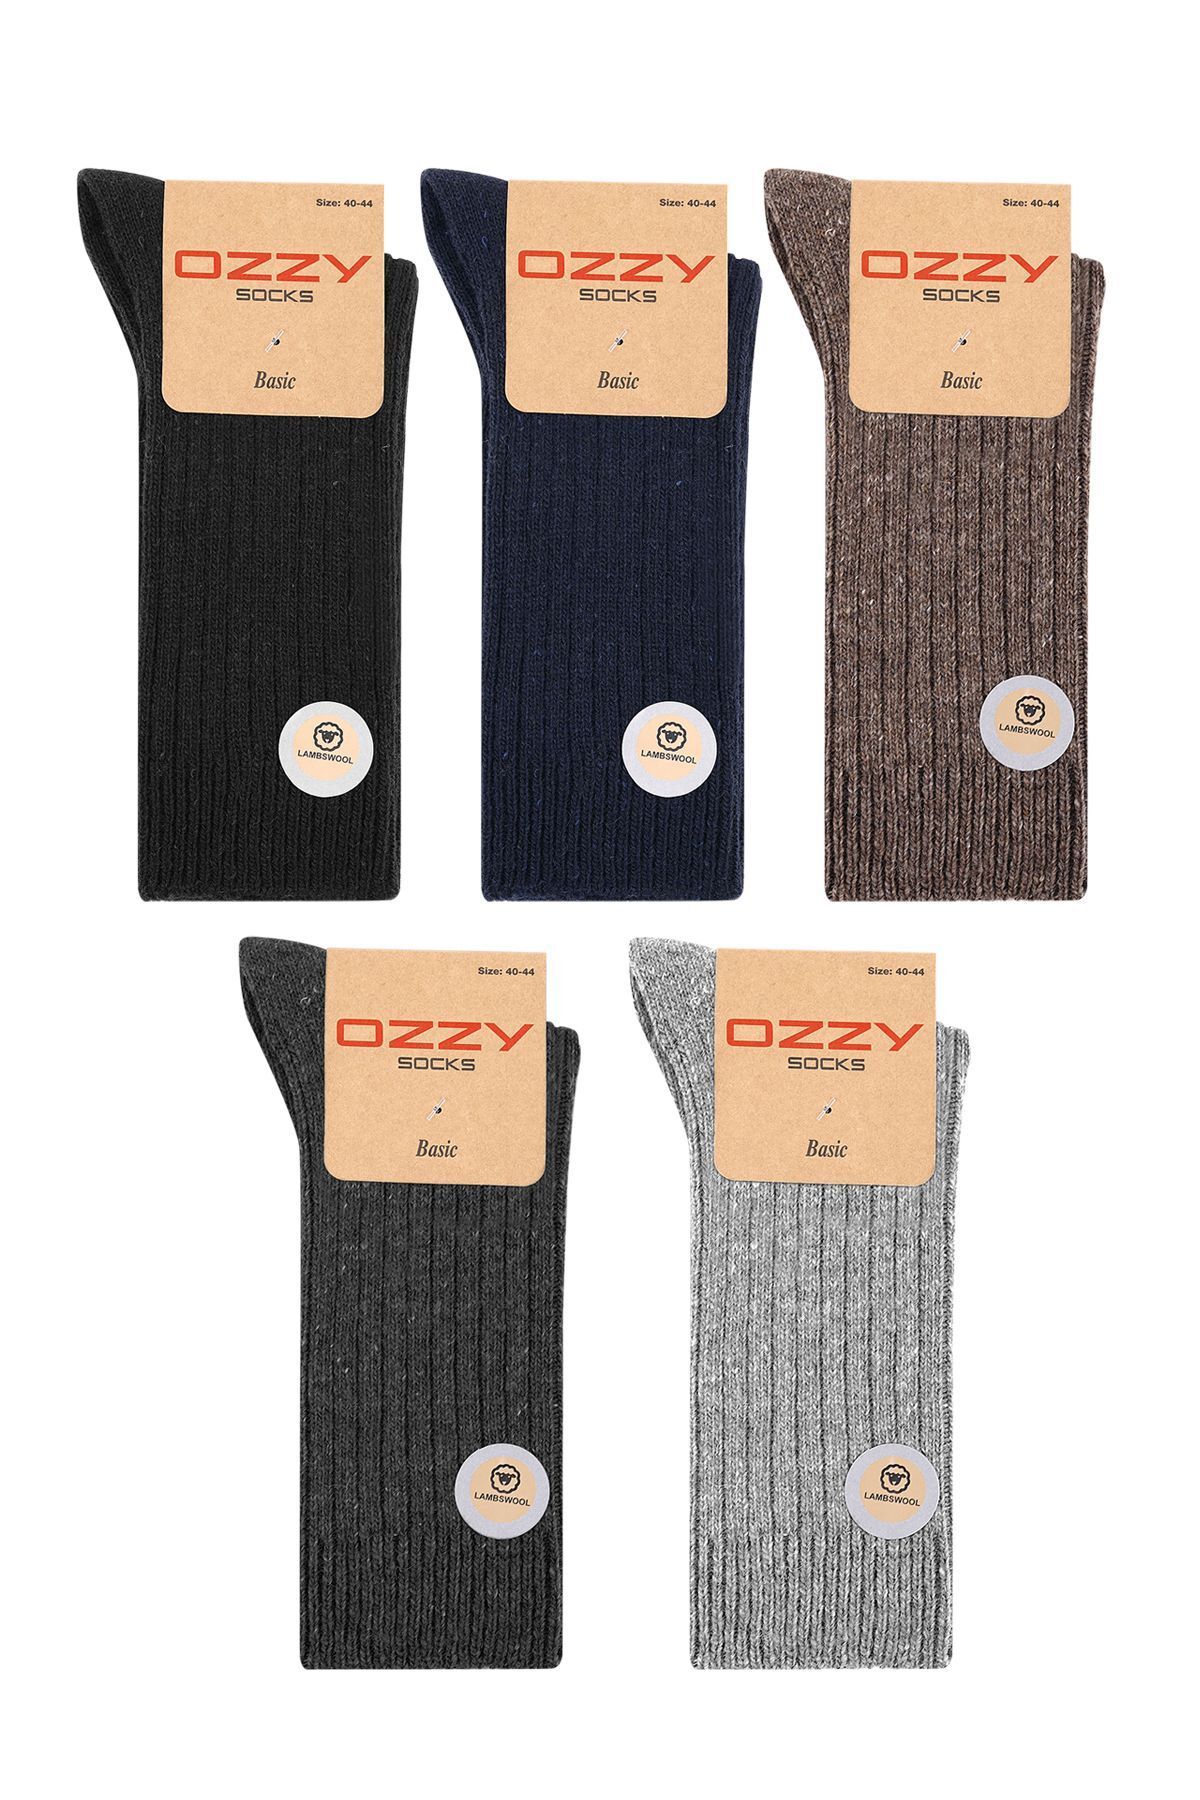 Ozzy Socks 5 Çift Kışlık Erkek Lambswool Yünlü Uyku Çorabı Soft Touch